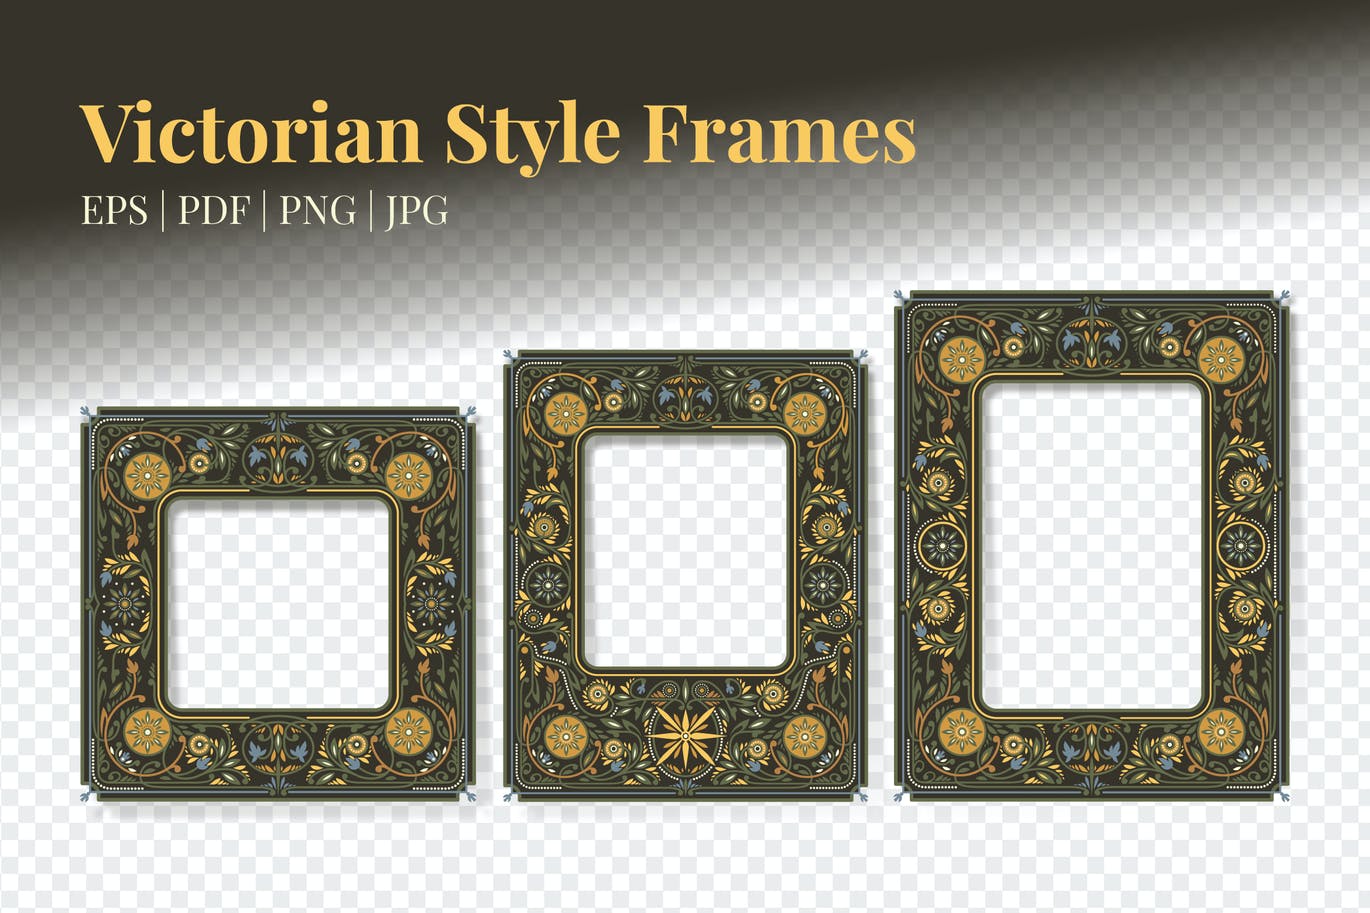 高品质的时尚高端维多利亚风格相框边框大集合-EPS, PDF, JPG, PNG